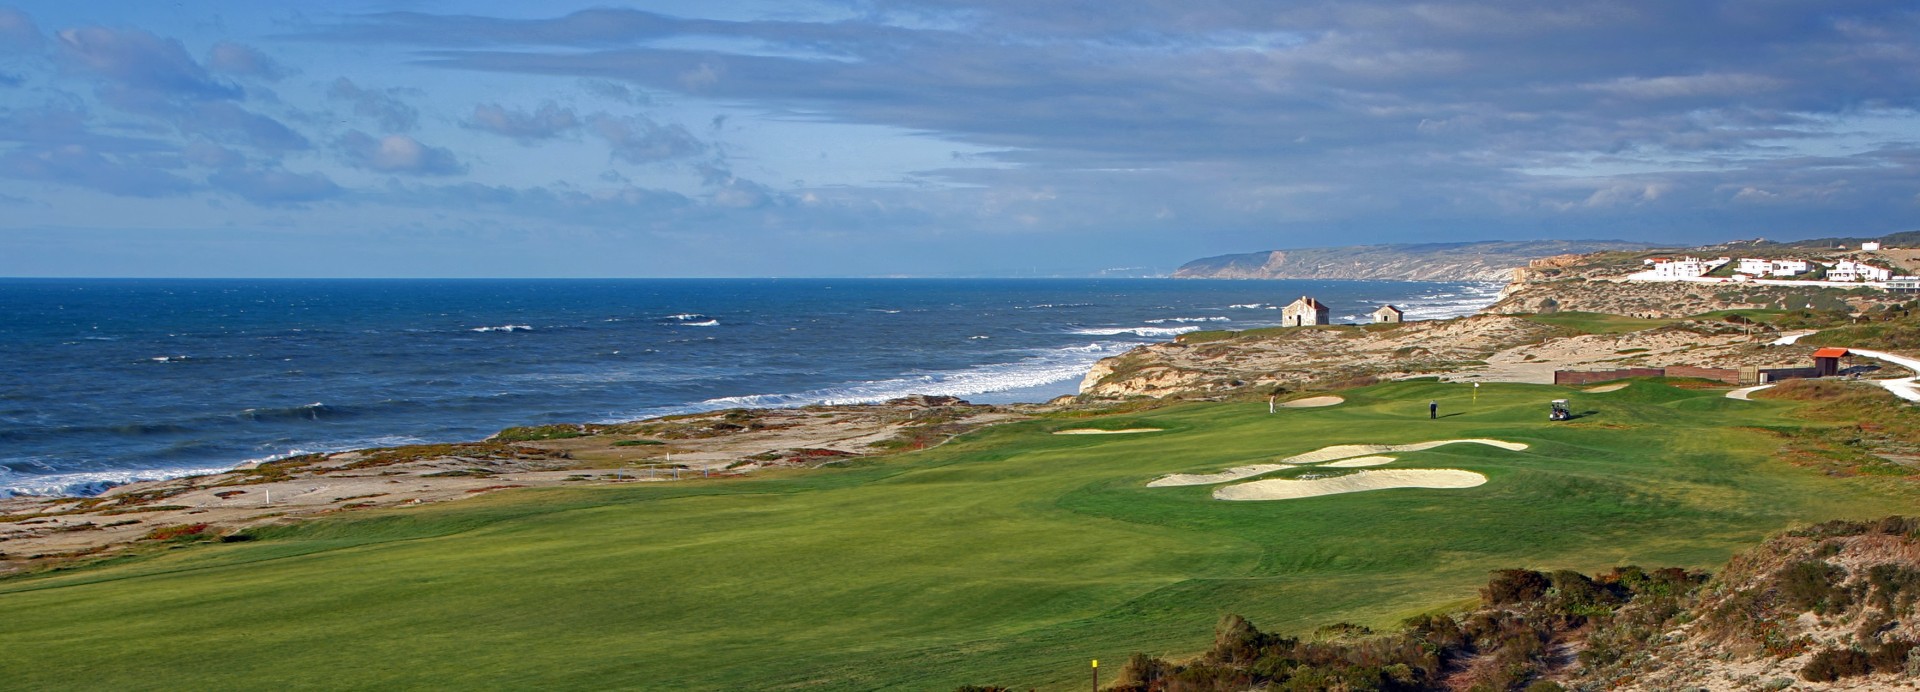 Praia del Rey Golf  | Golfové zájezdy, golfová dovolená, luxusní golf